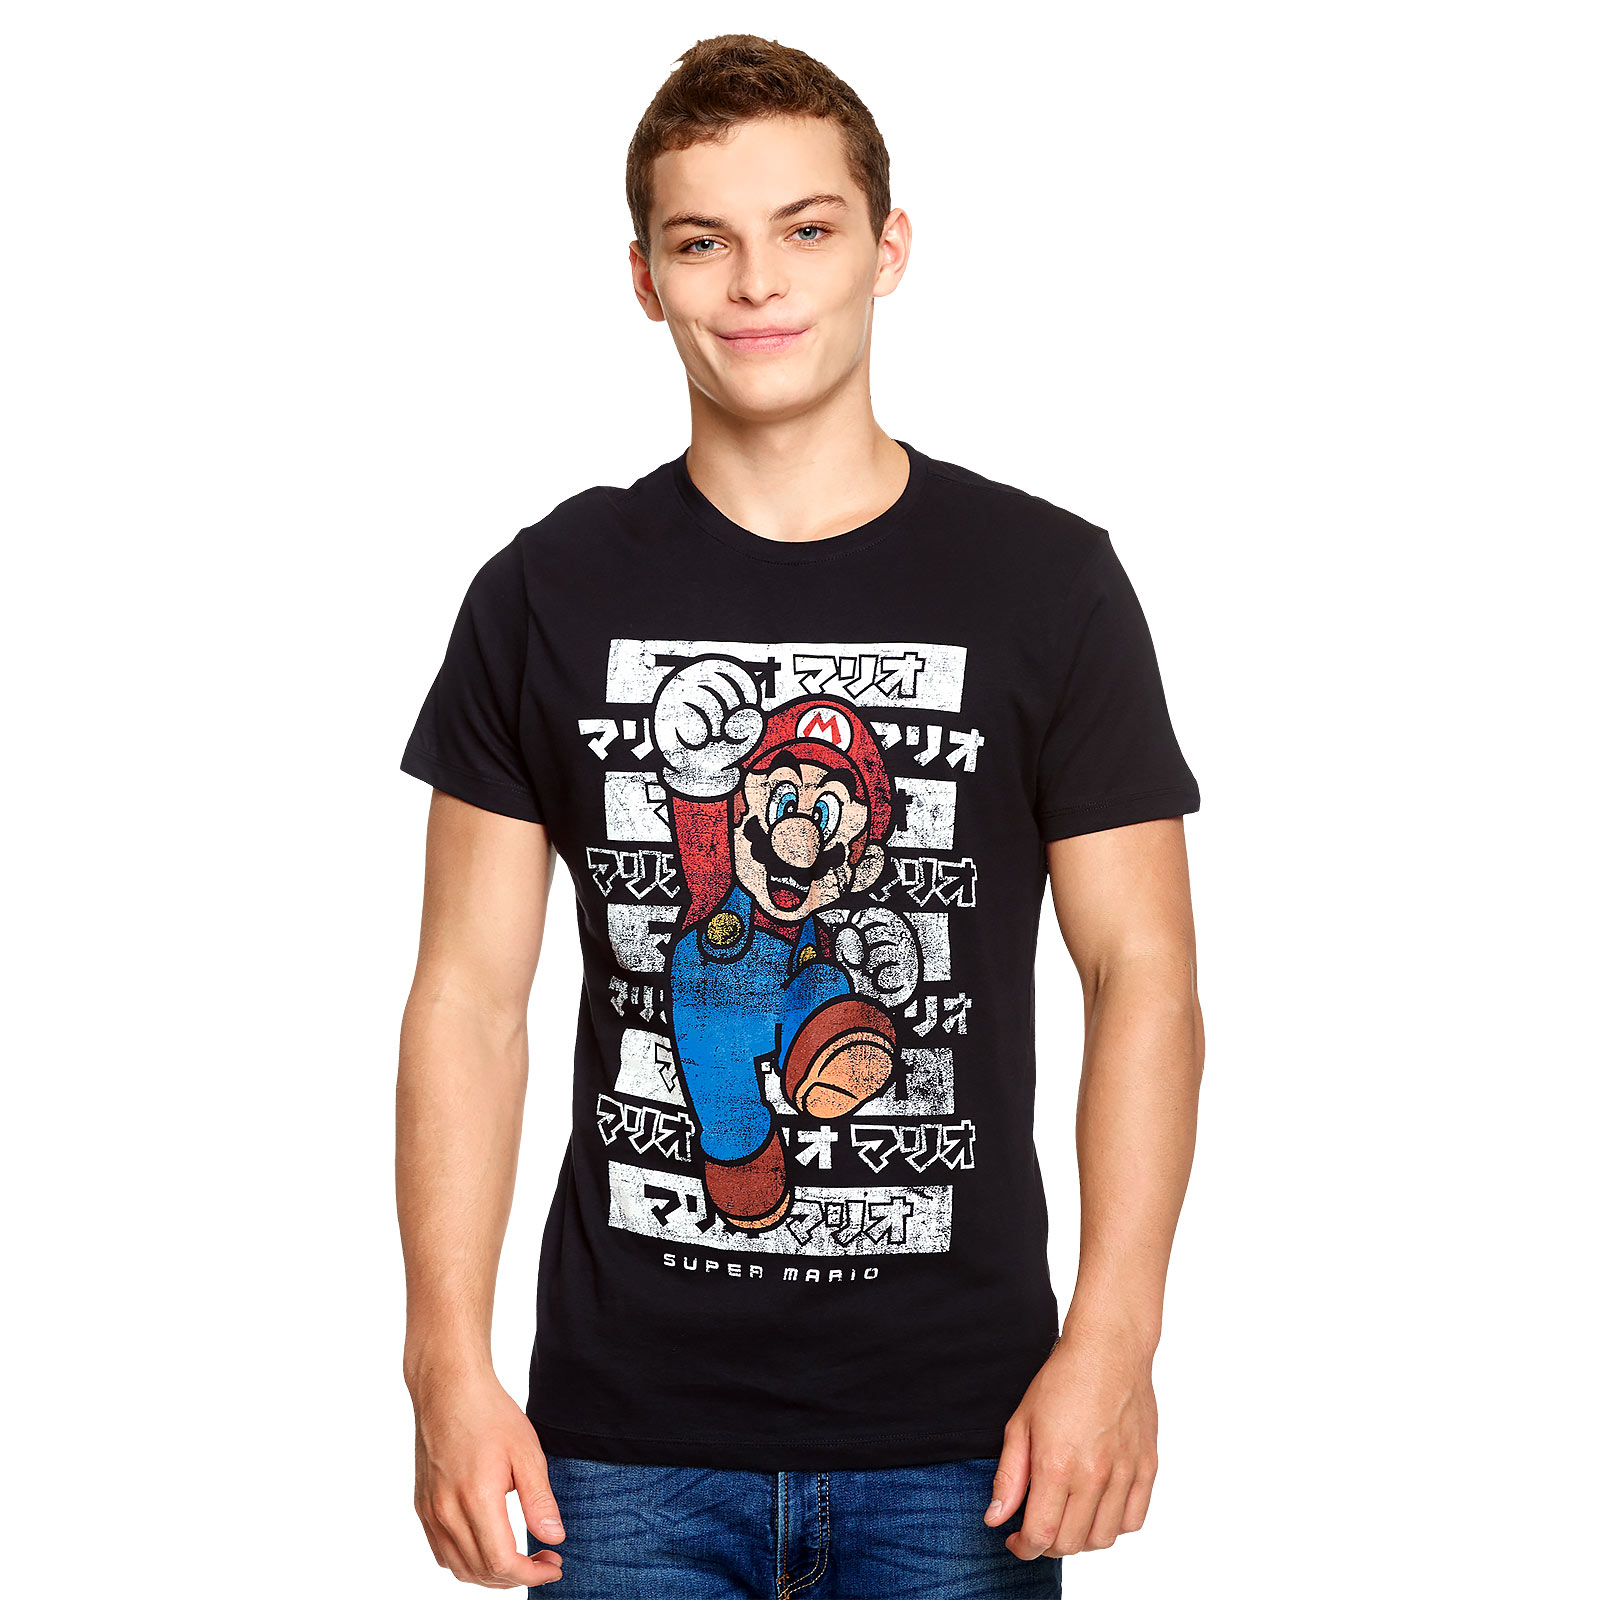 Super Mario Jump T-Shirt Zwart